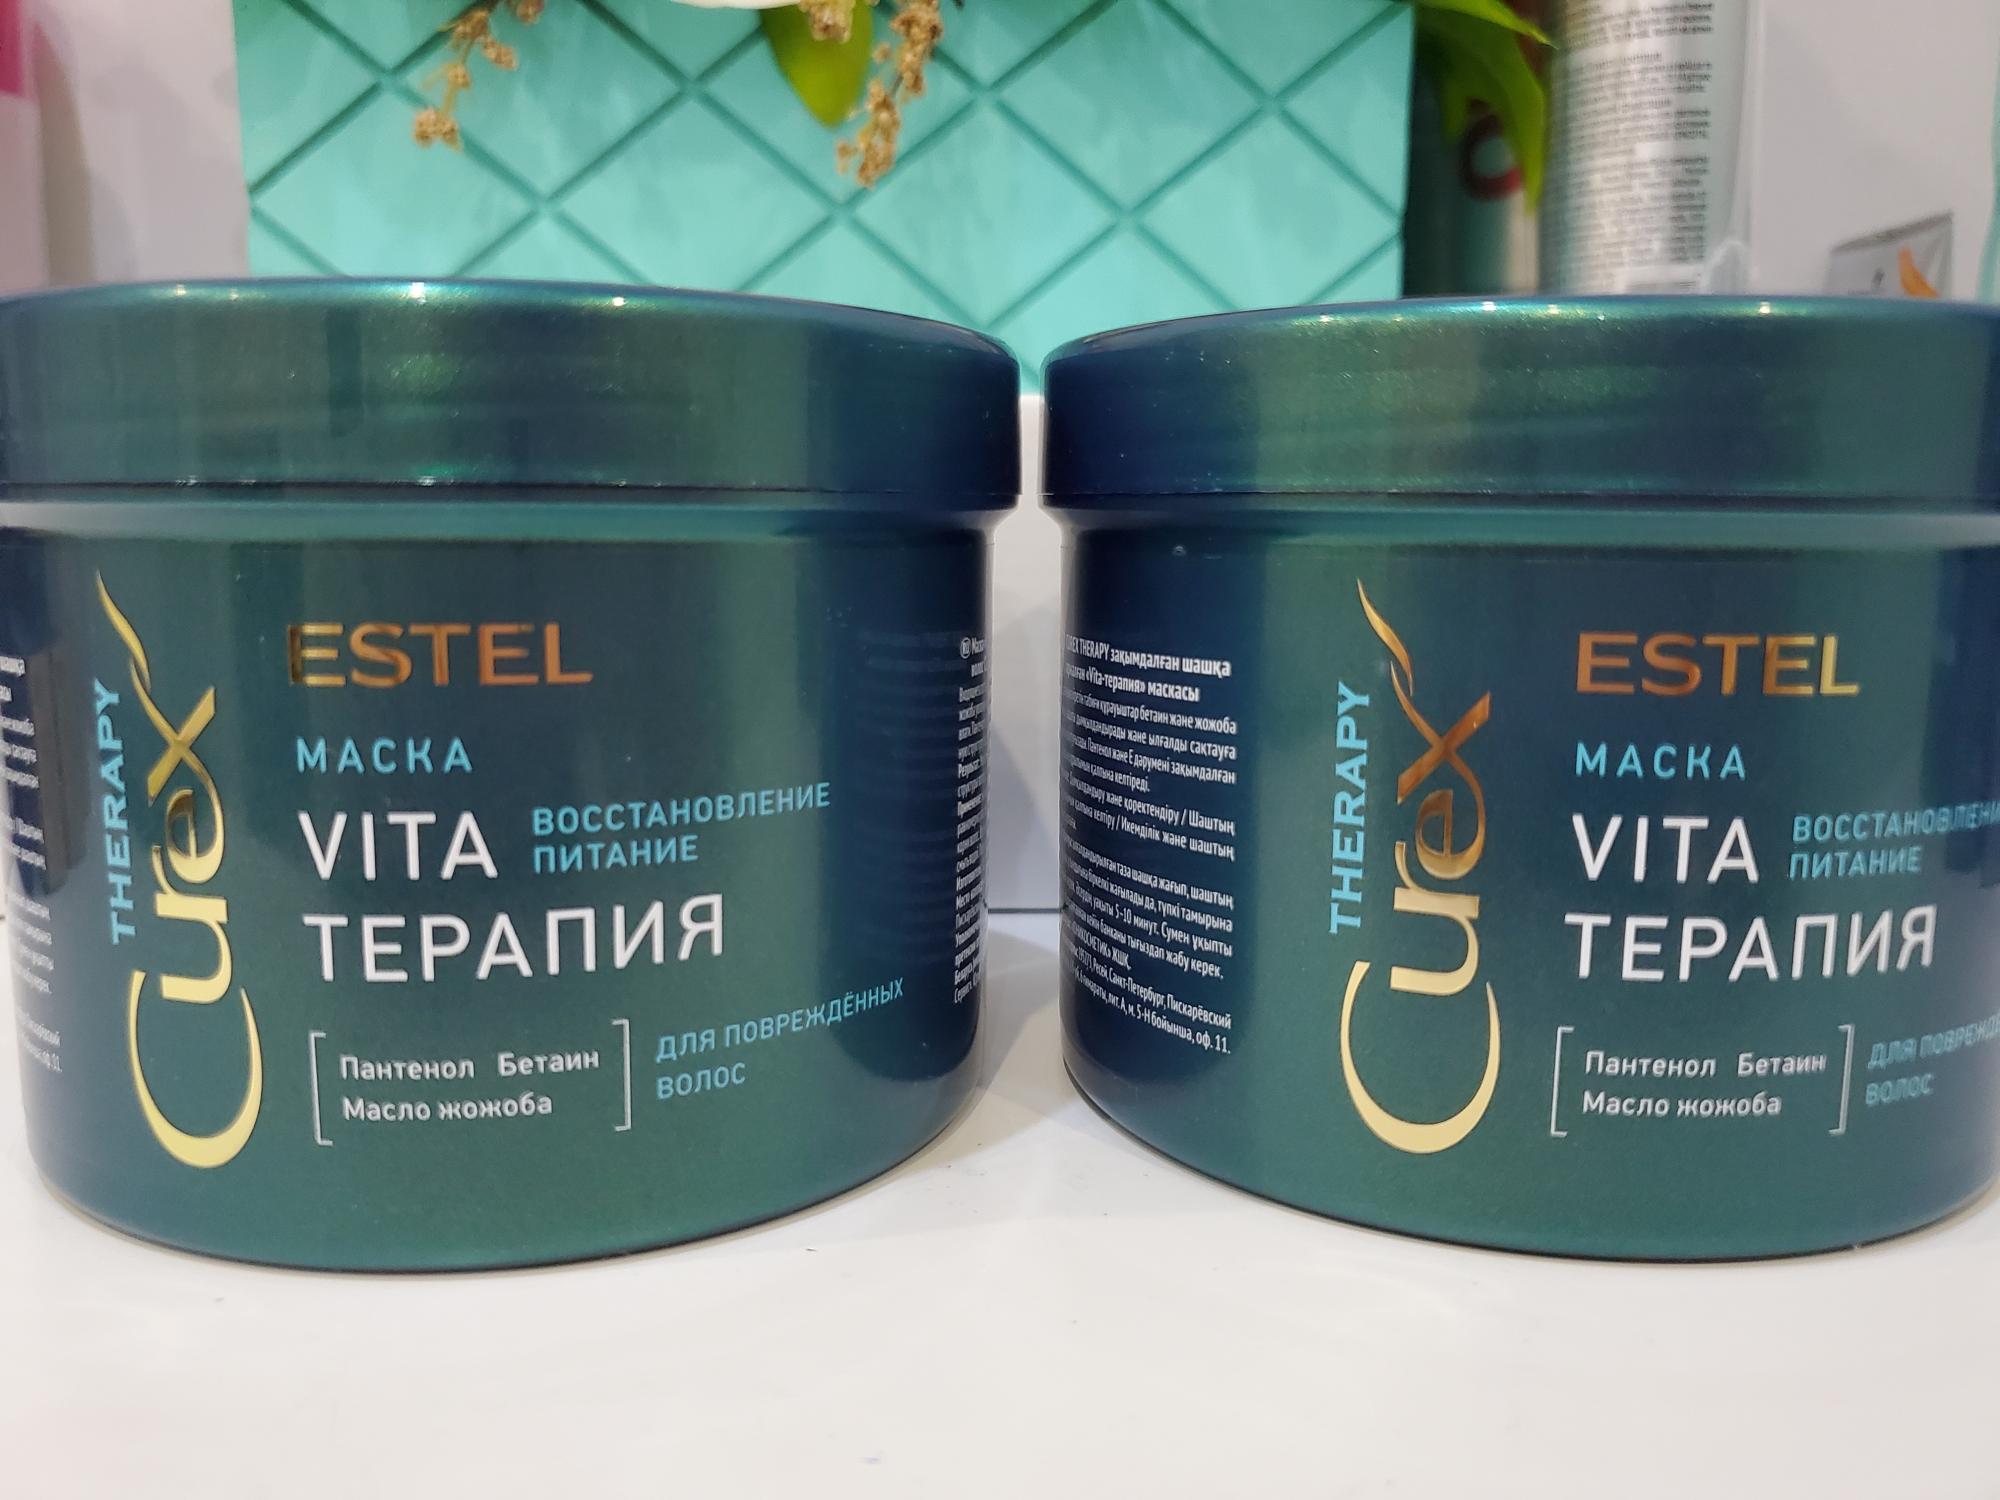 Маска Vita-терапия для повреждённых волос 500 мл Estel.